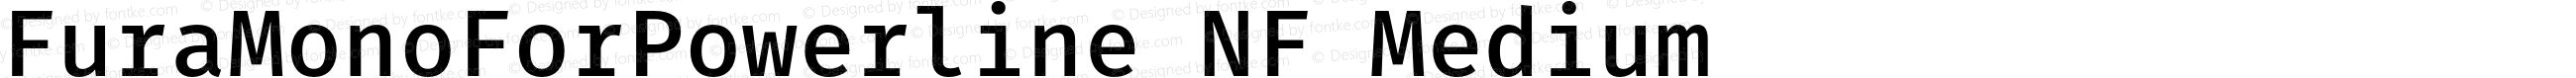 Fura Mono Medium for Powerline Nerd Font Plus Font Awesome Plus Octicons Plus Pomicons Plus Font Linux Windows Compatible